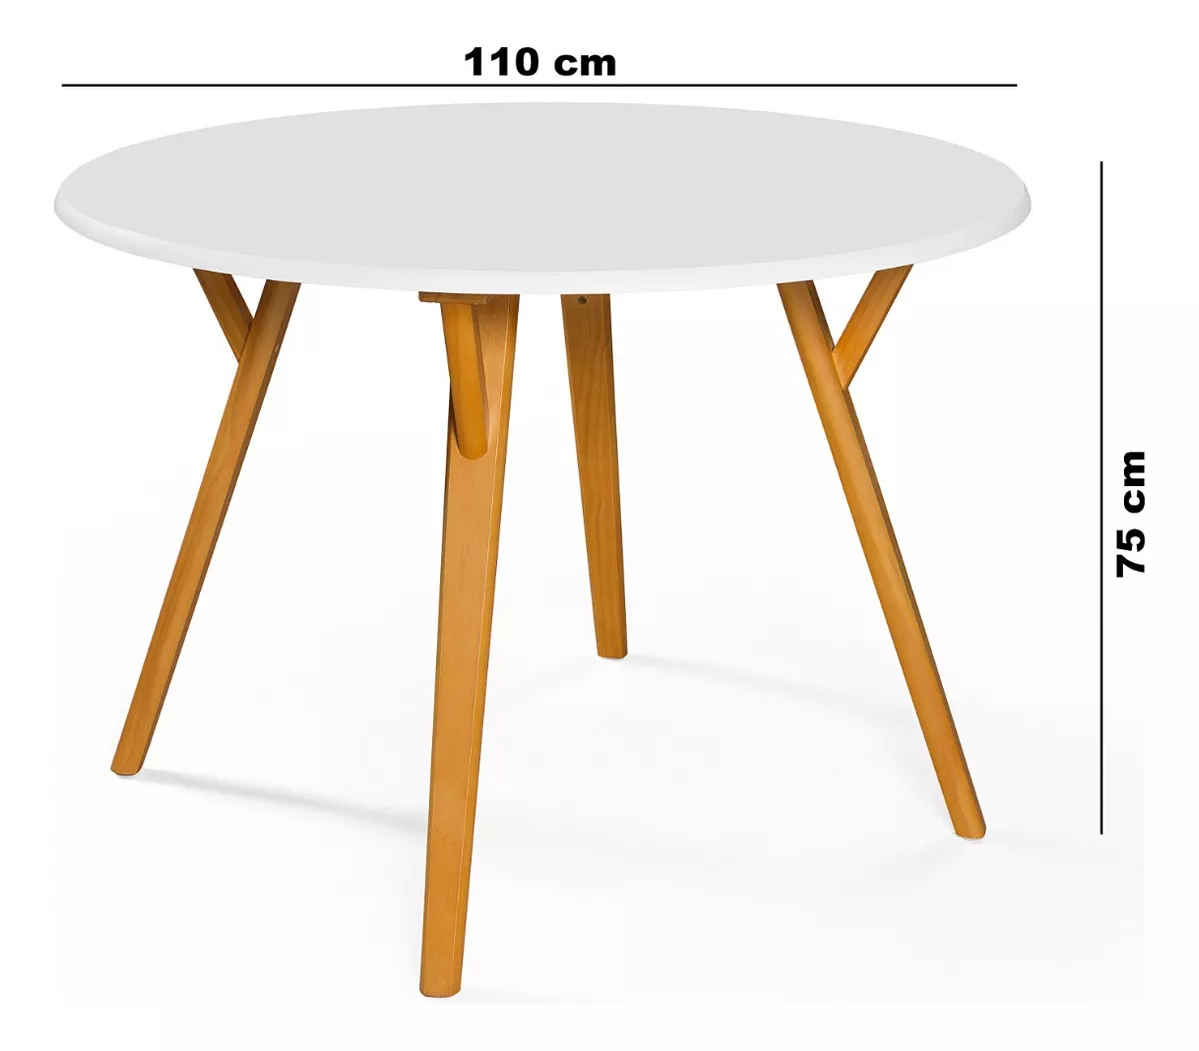 Segunda imagem para pesquisa de mesa redonda 4 cadeiras